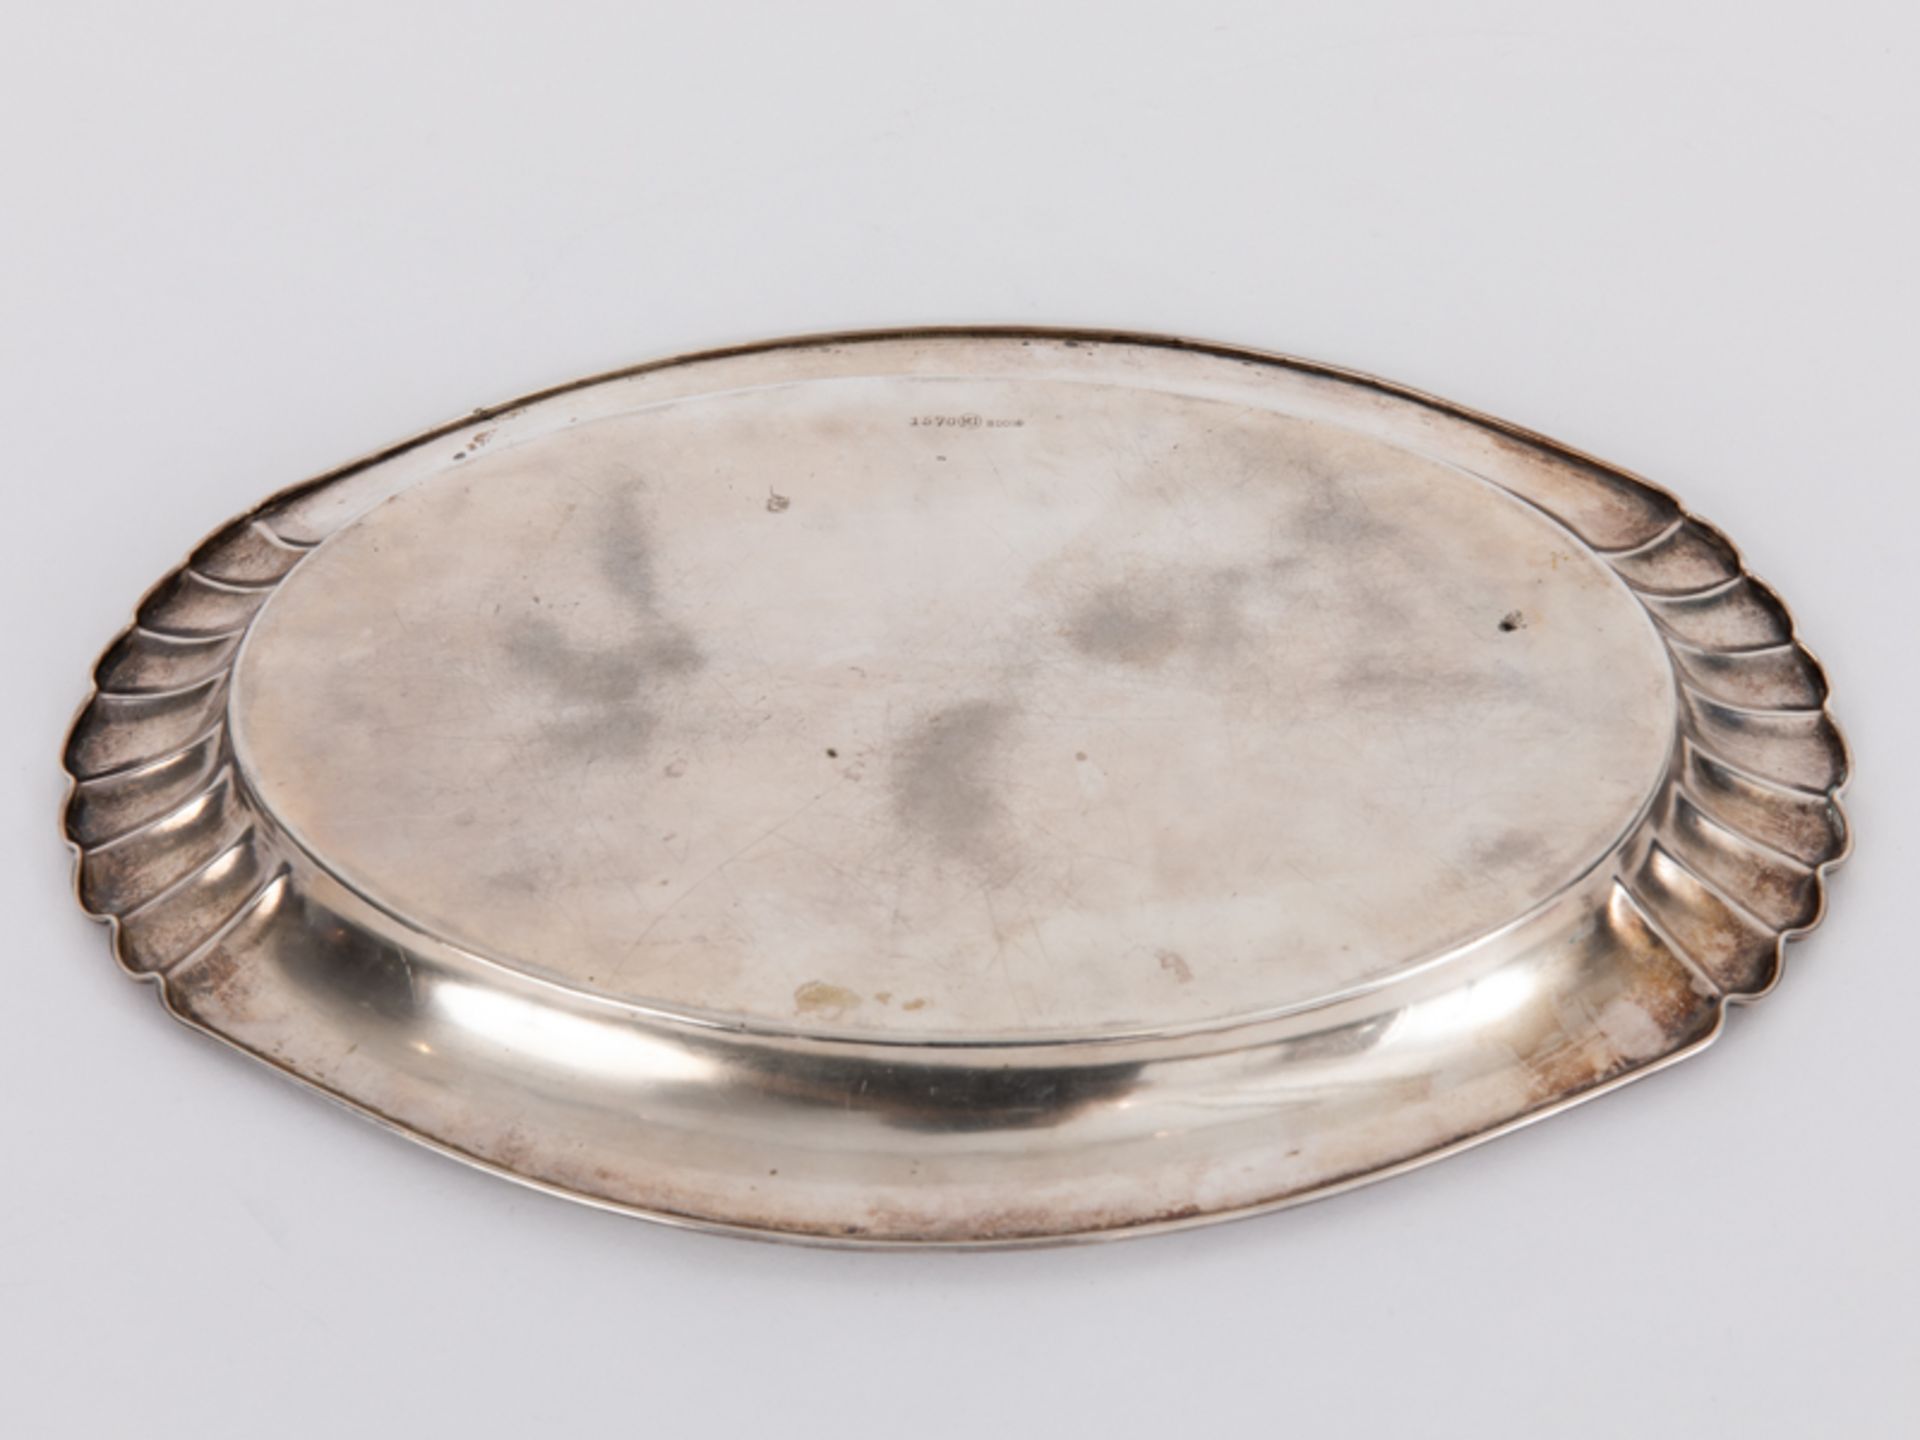 Kleines Tablett, deutsch, 20. Jh. br800/-Silber, ca. 250 g; Ovalform mit gerundet ansteigender - Bild 4 aus 4